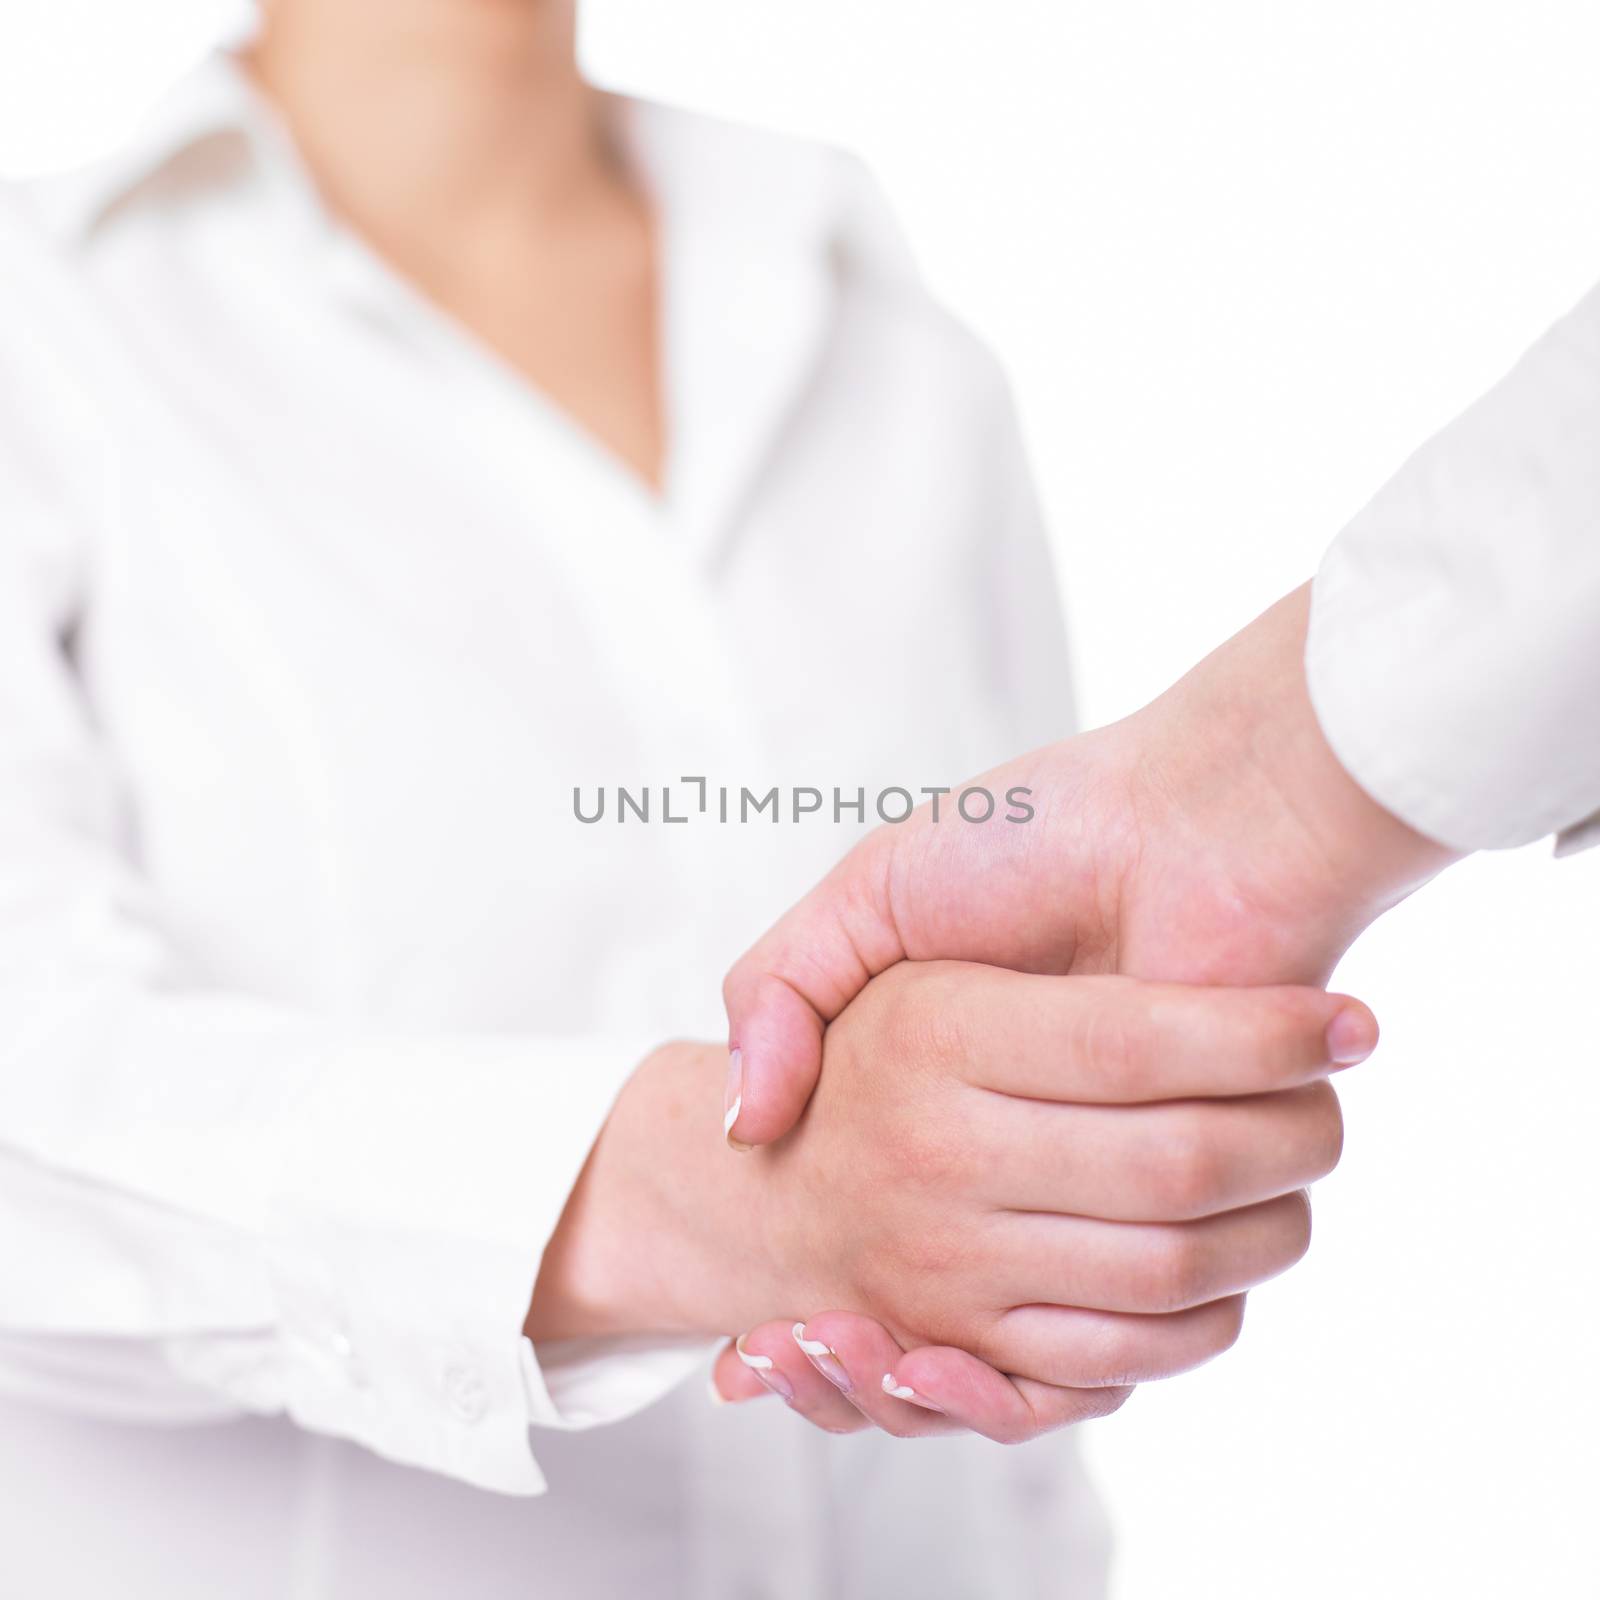 Two hands in Handshake - Business Handshaking